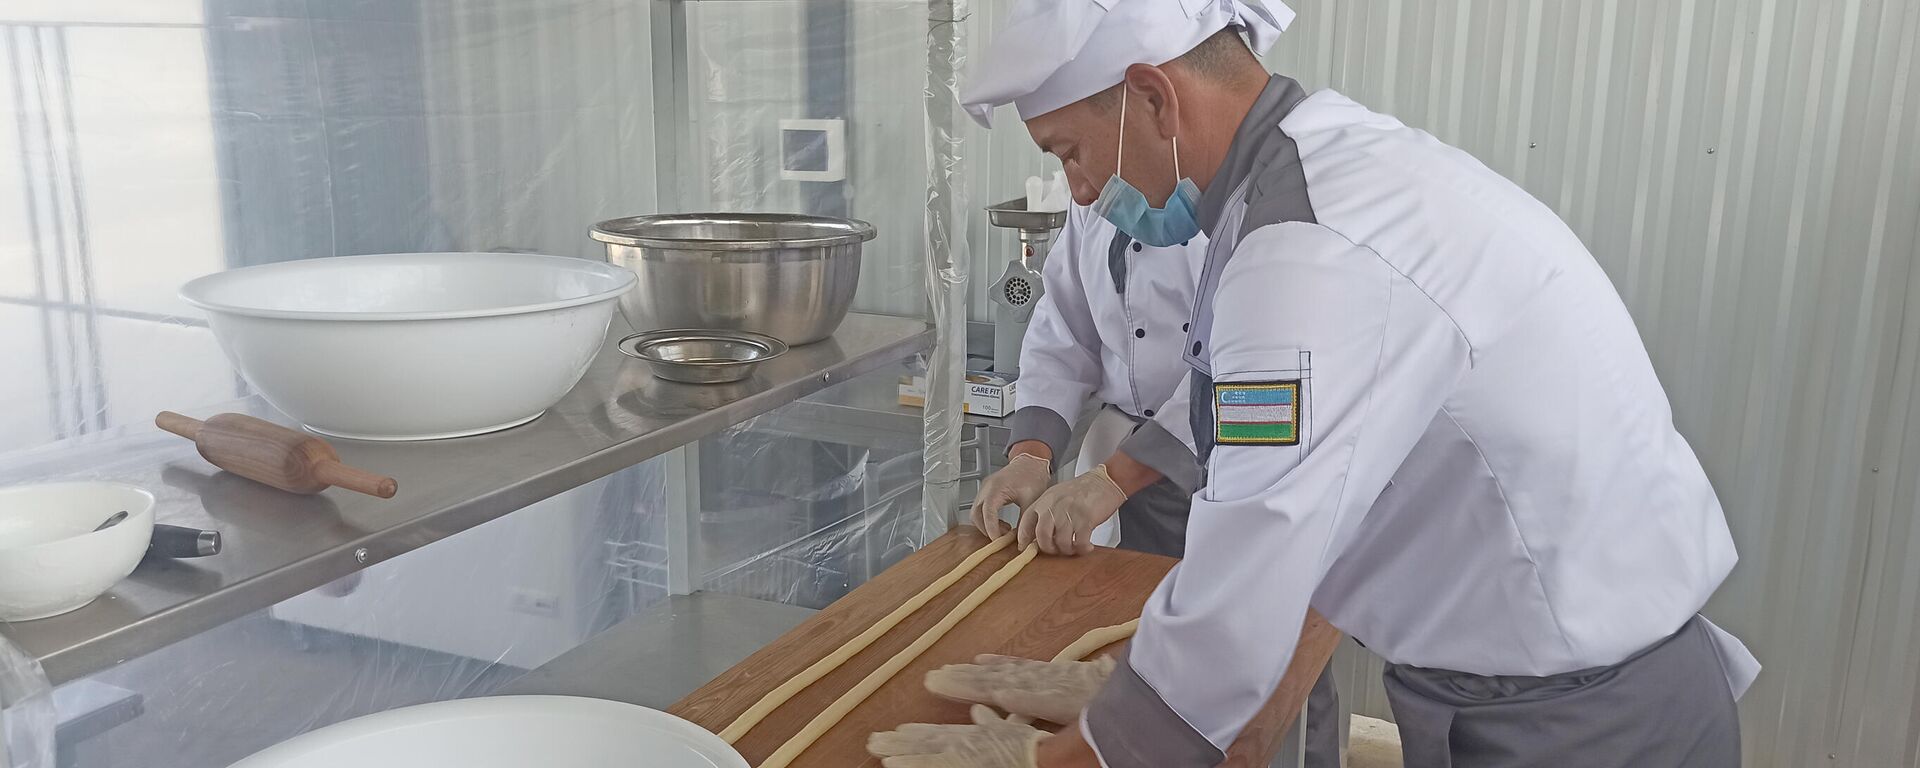 Конкурс Военно-полевая кухня на АрМИ-2021 - Sputnik Узбекистан, 1920, 01.09.2021